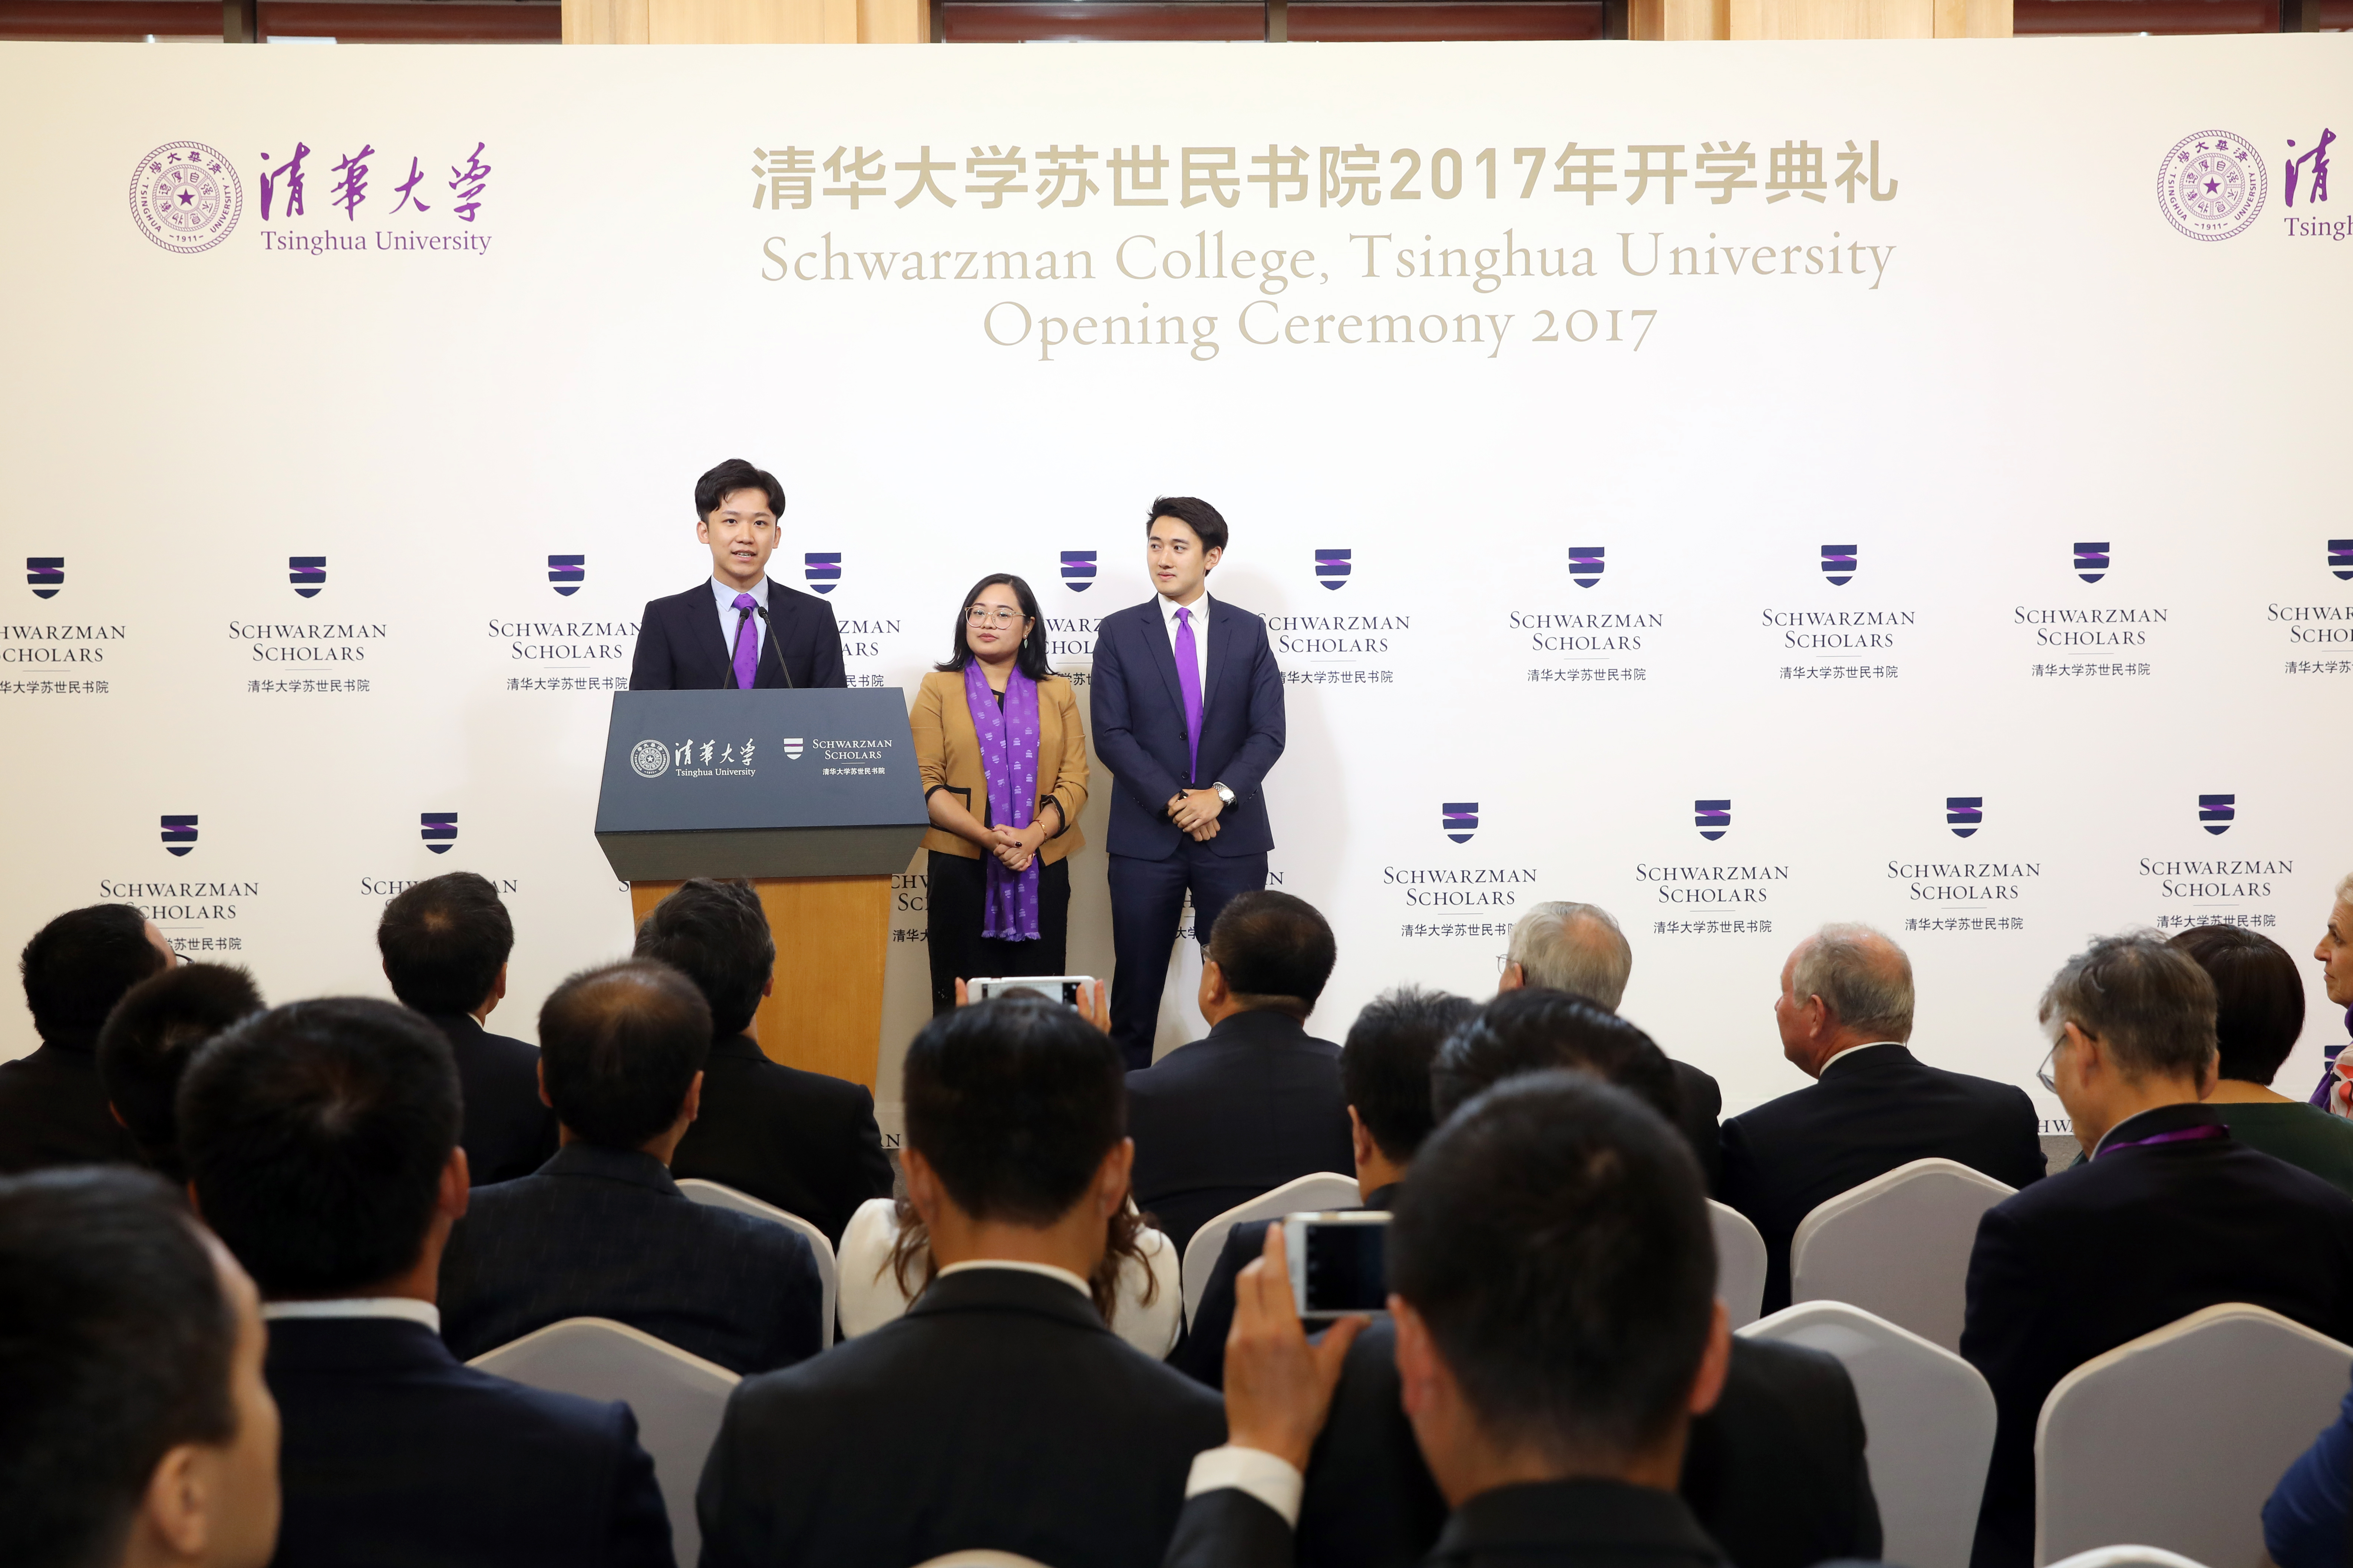 zihao-zhang-alumni-schwarzman-speech.jpg